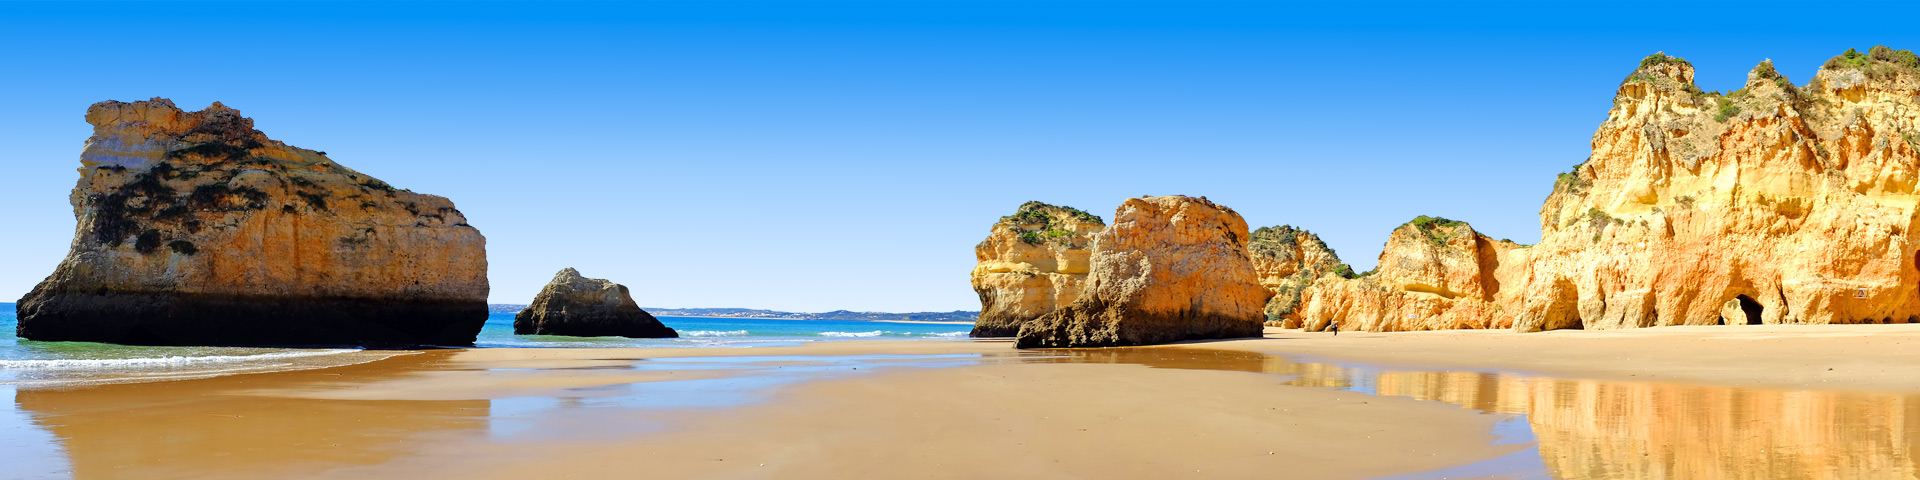 Alle last minute vakanties naar Algarve bij Prijsvrij Vakanties